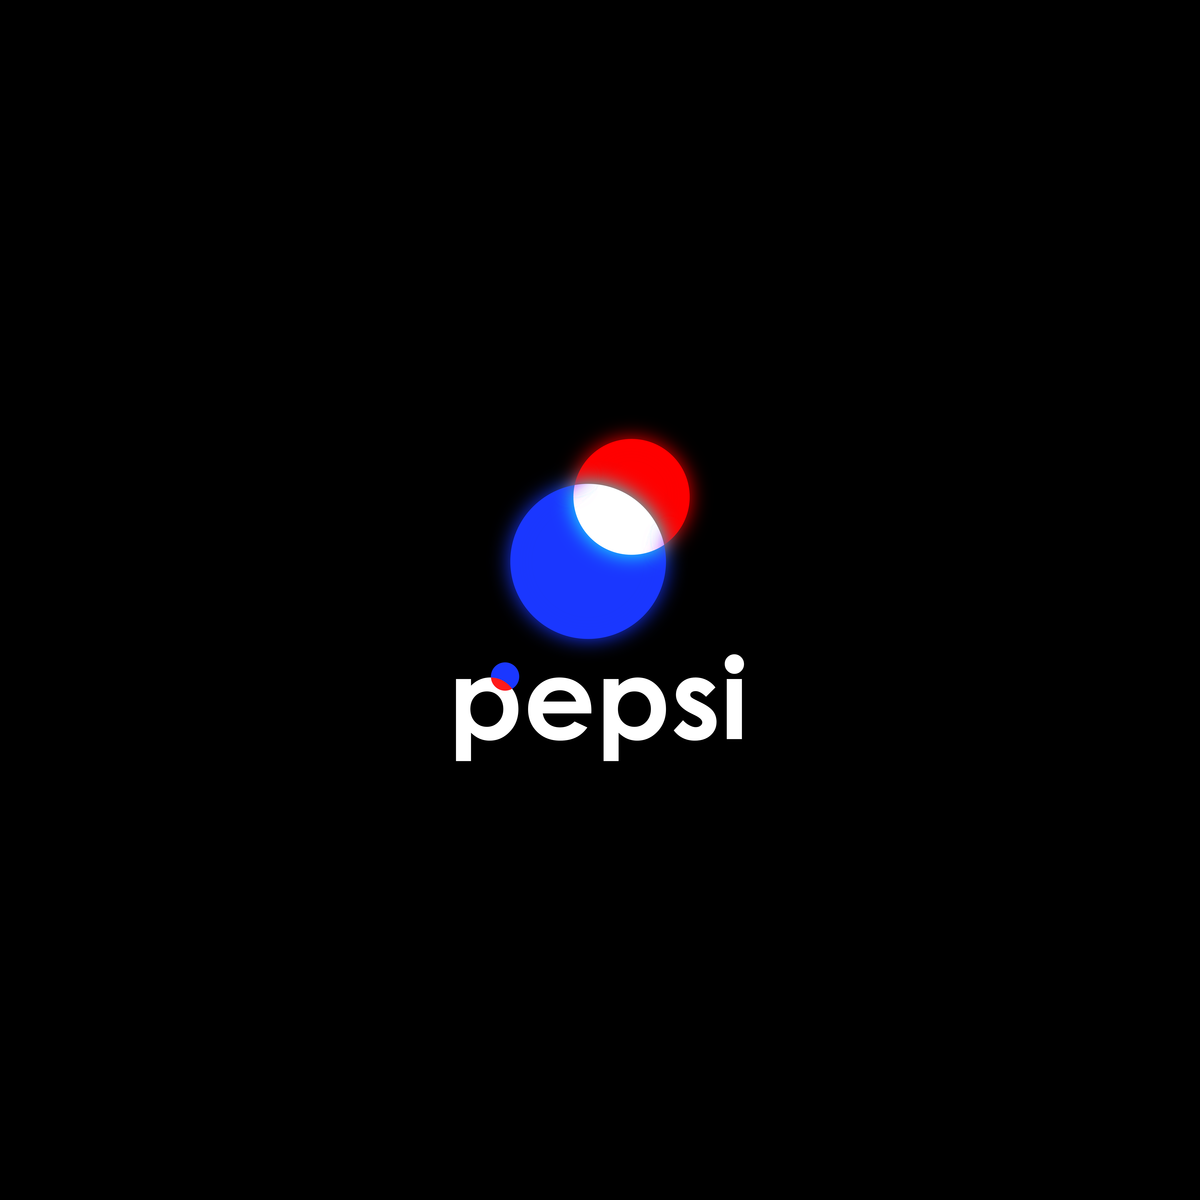 pepsi logo rebranding by Zakehan on Dribbble